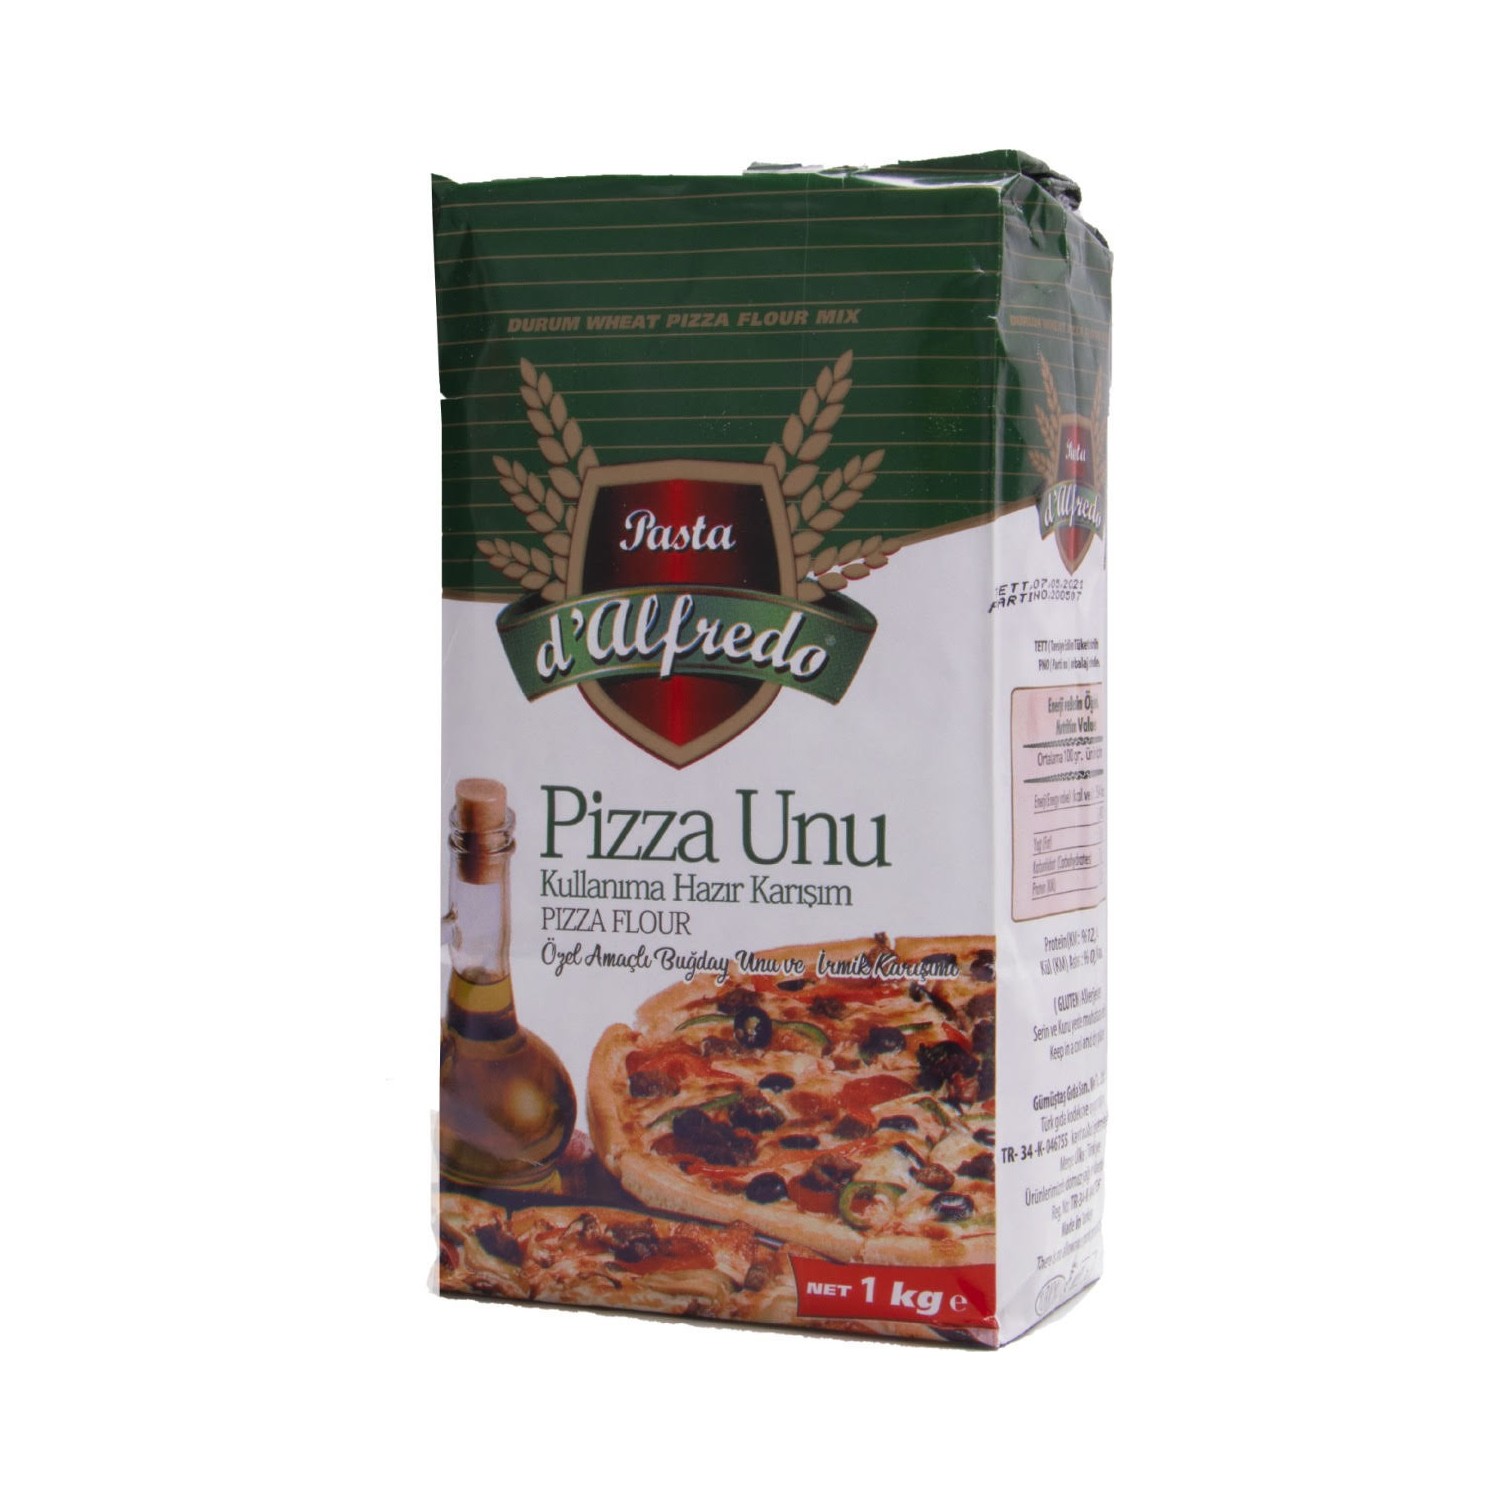 Sanal Fırın - Pastane ve Fırıncılık Malzemeleri D'alfredo Pizza Unu 1 kg